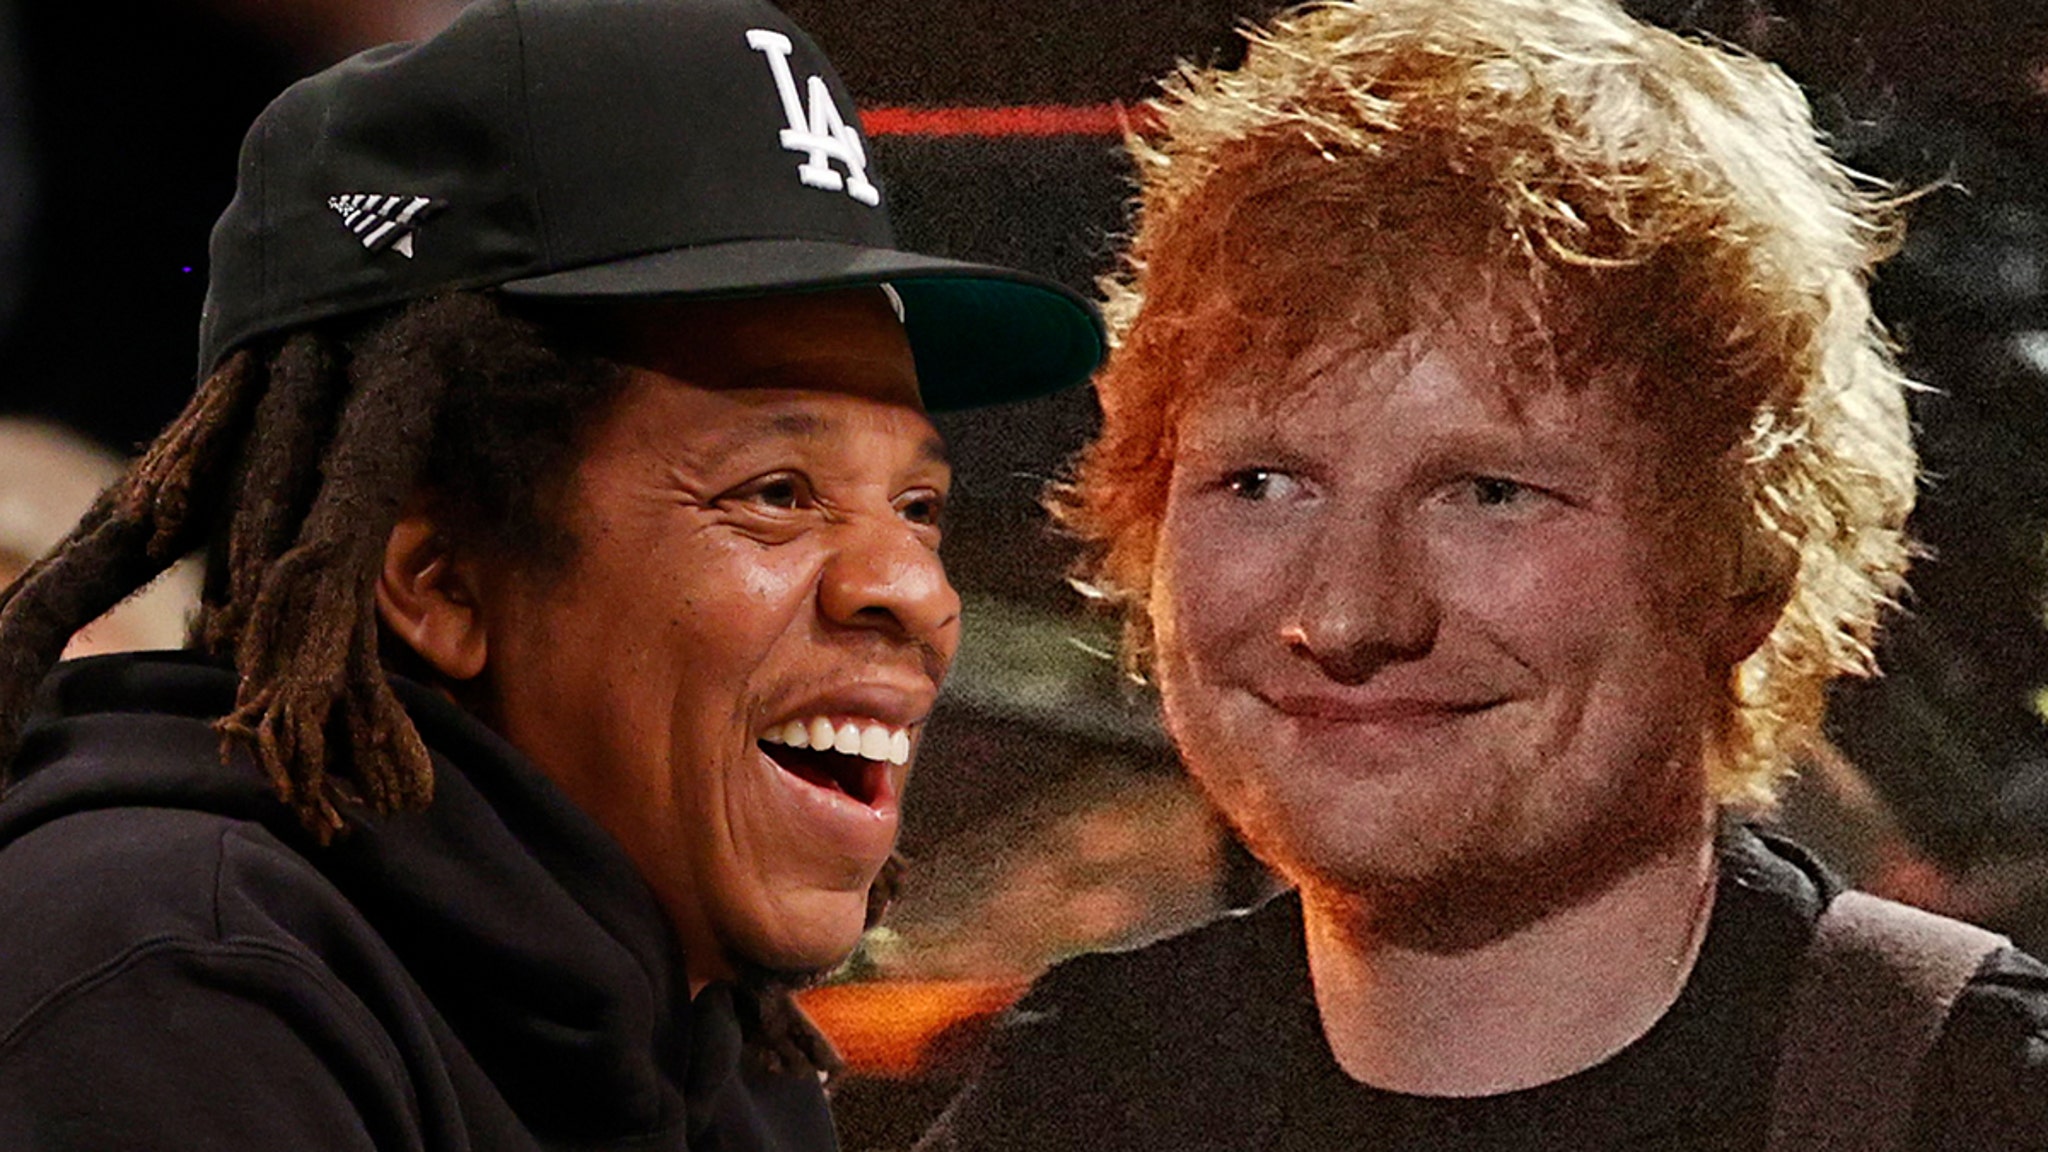 Jay-Z a refusé le long métrage “Shape of You” d’Ed Sheeran, dit que la chanson n’avait pas besoin de rap